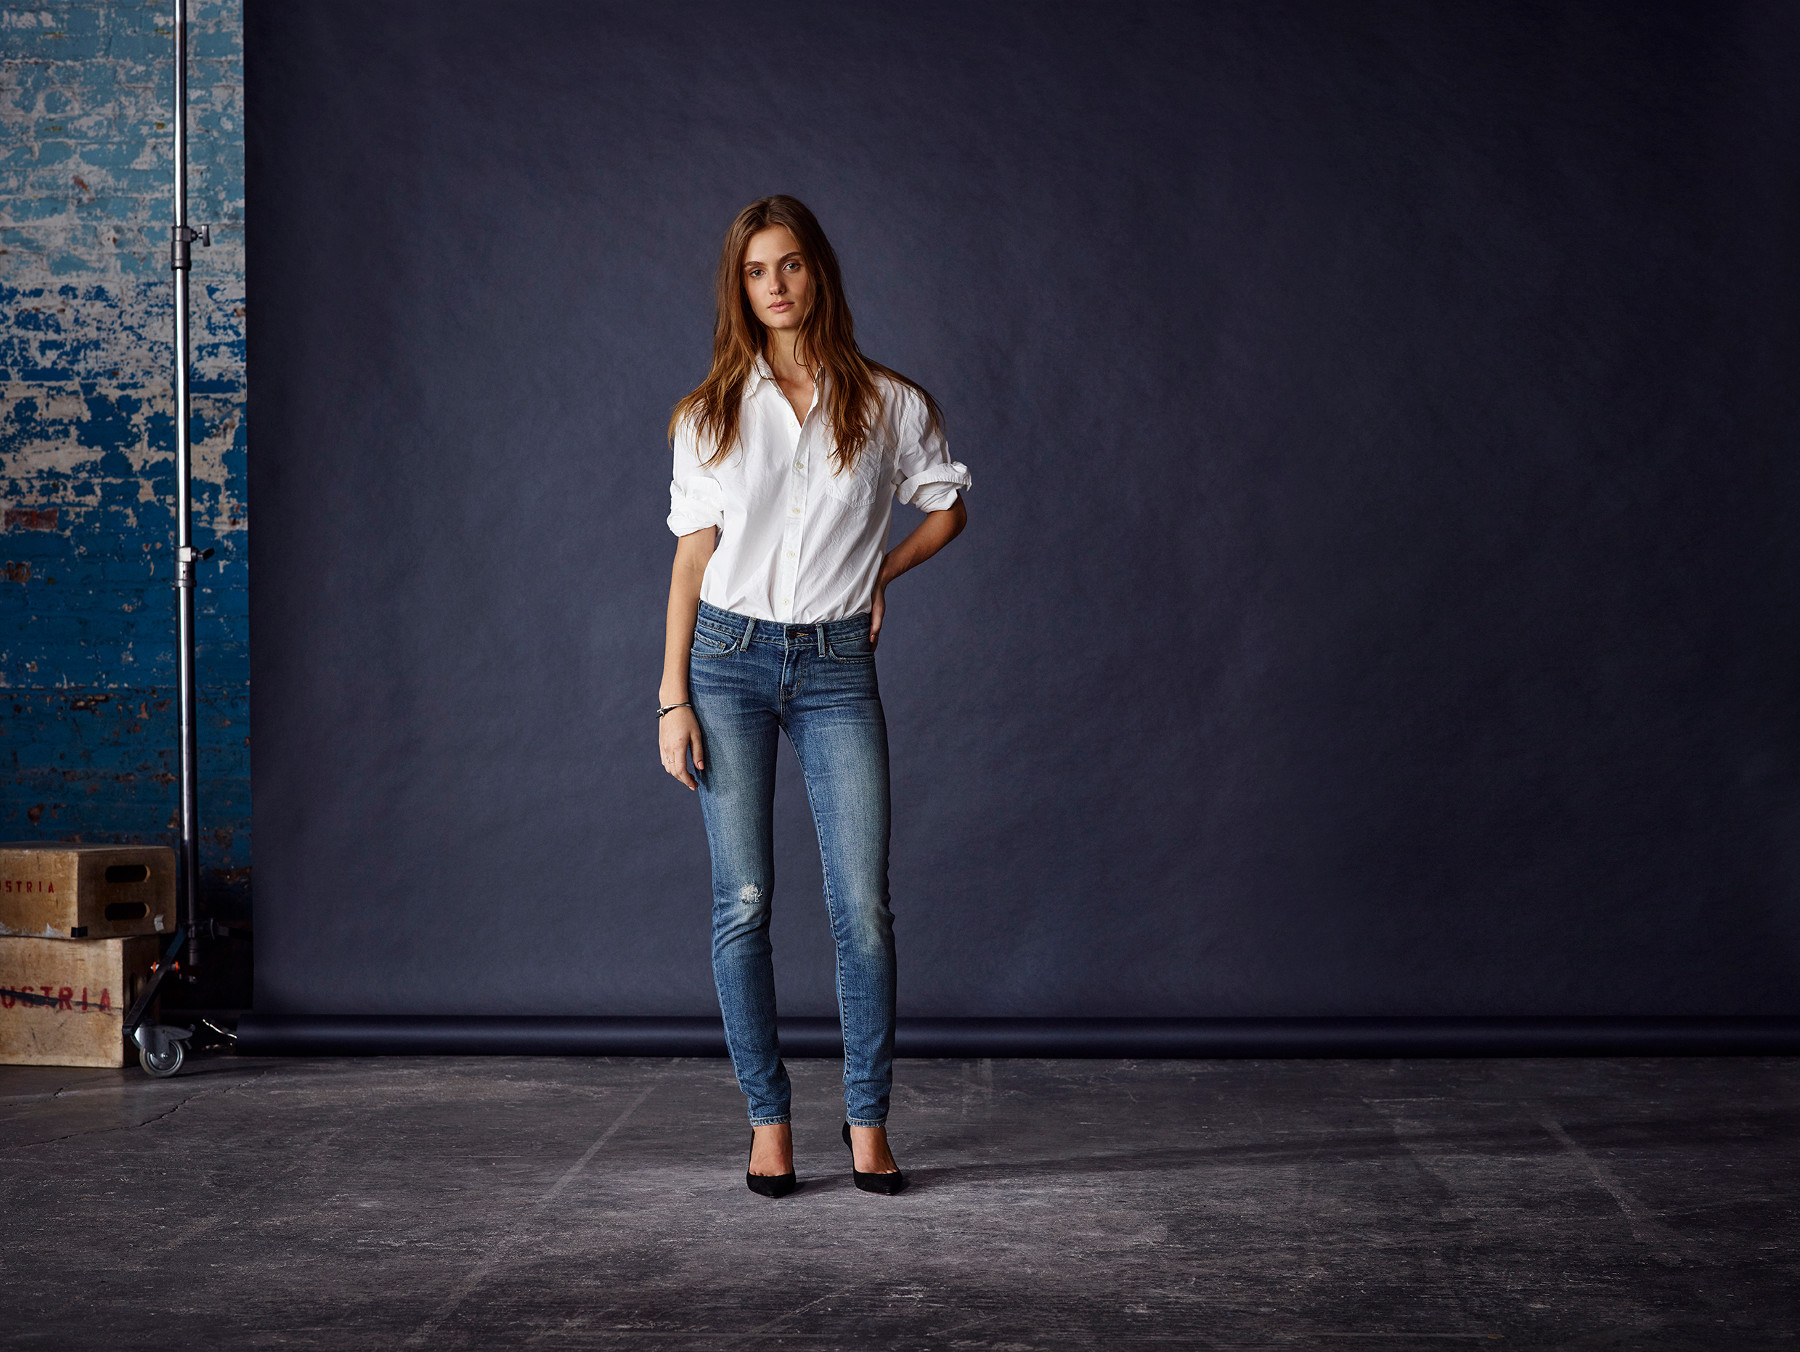 levis jeans women's fit guide